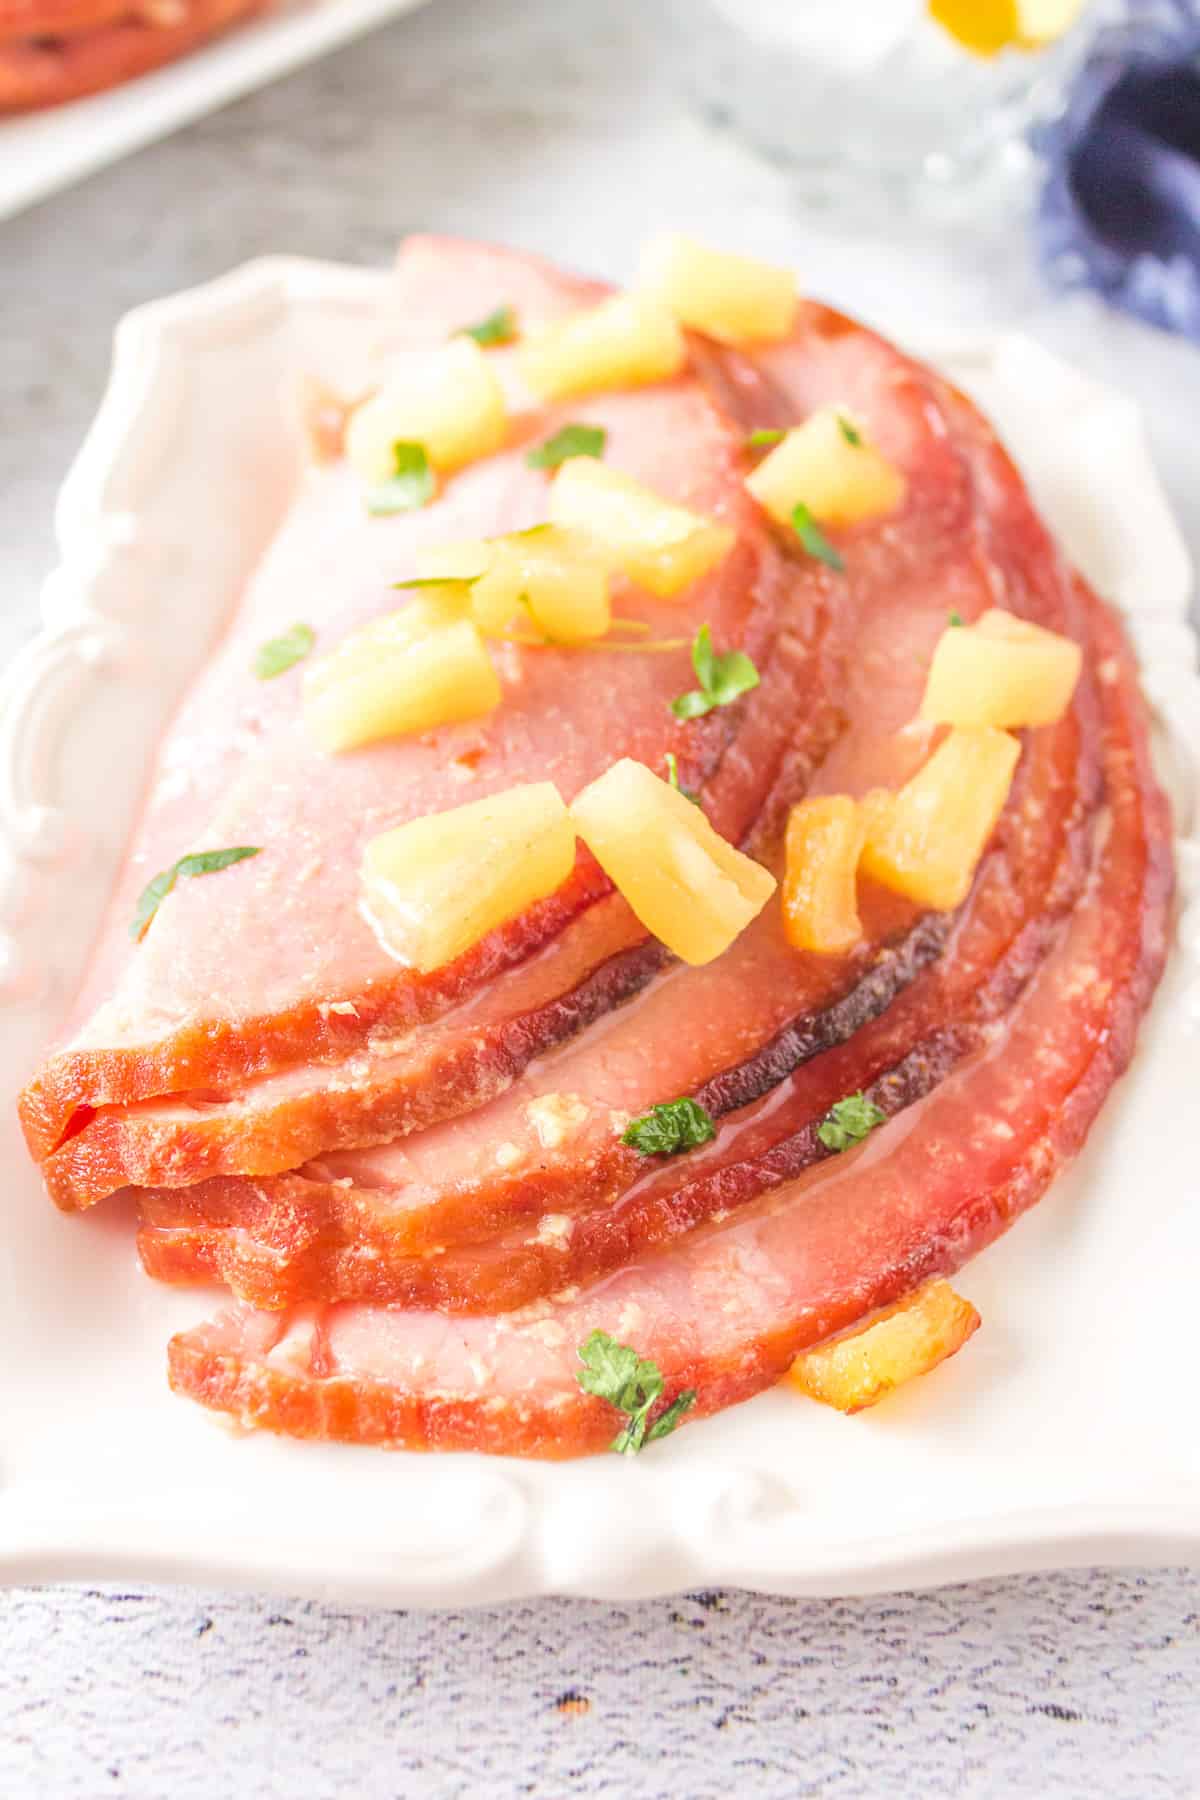 Slices of glazed ham with pineapple chunks on white platter